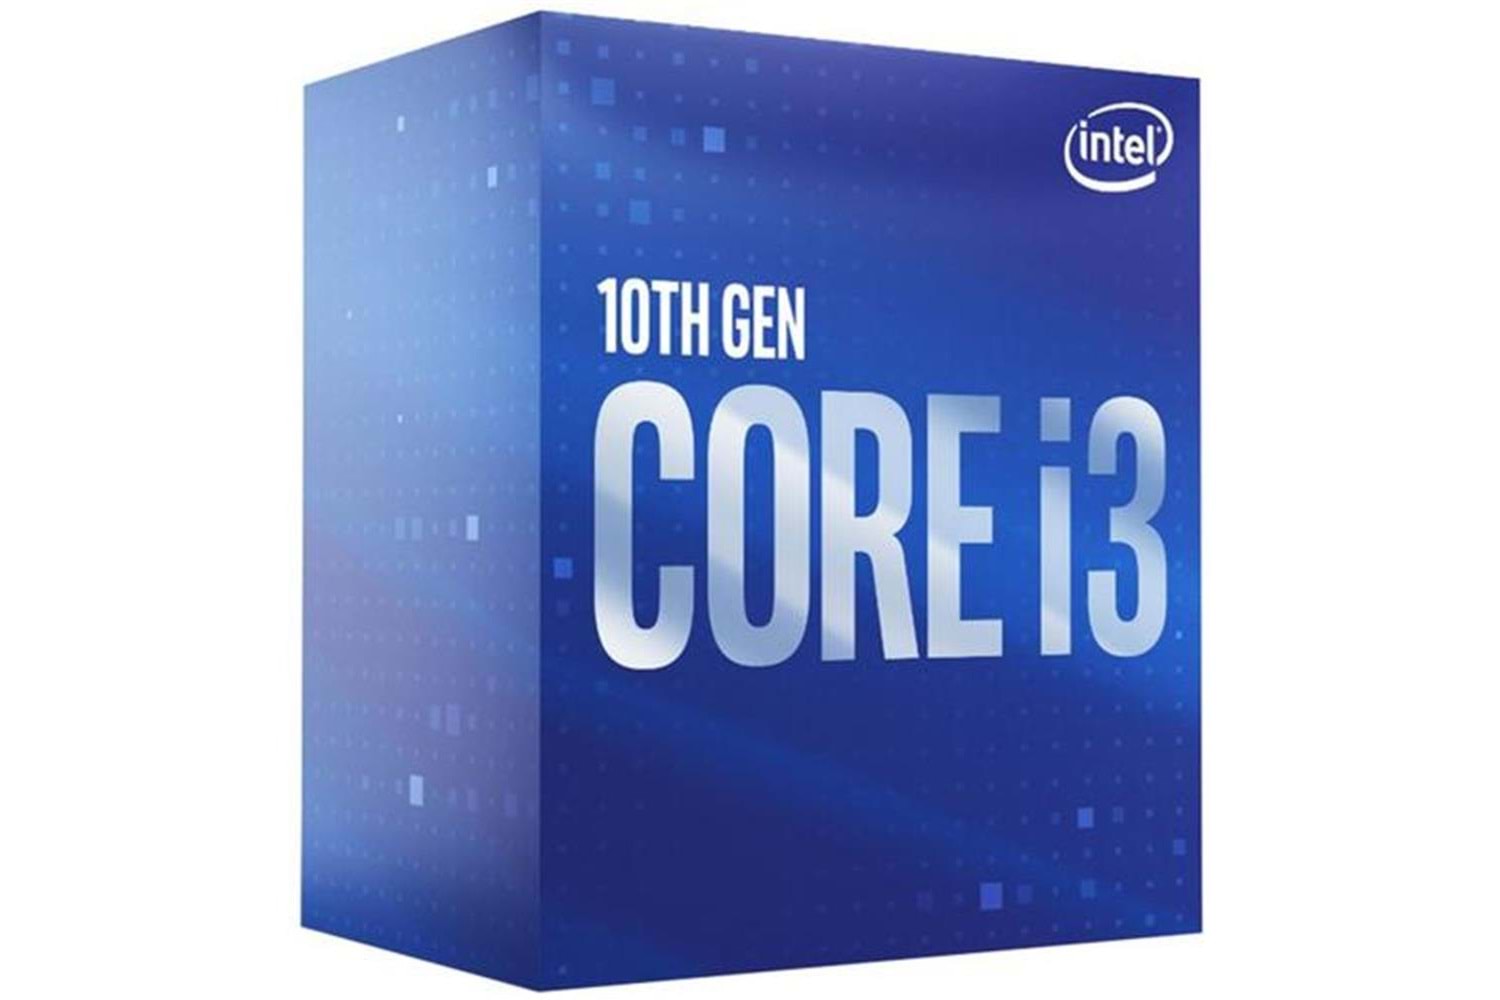 Intel Core i3 10100F 3.60GHz 6MB Önbellek 4 Çekirdek 1200 14nm Box İşlemci NOVGA (Fanlı)